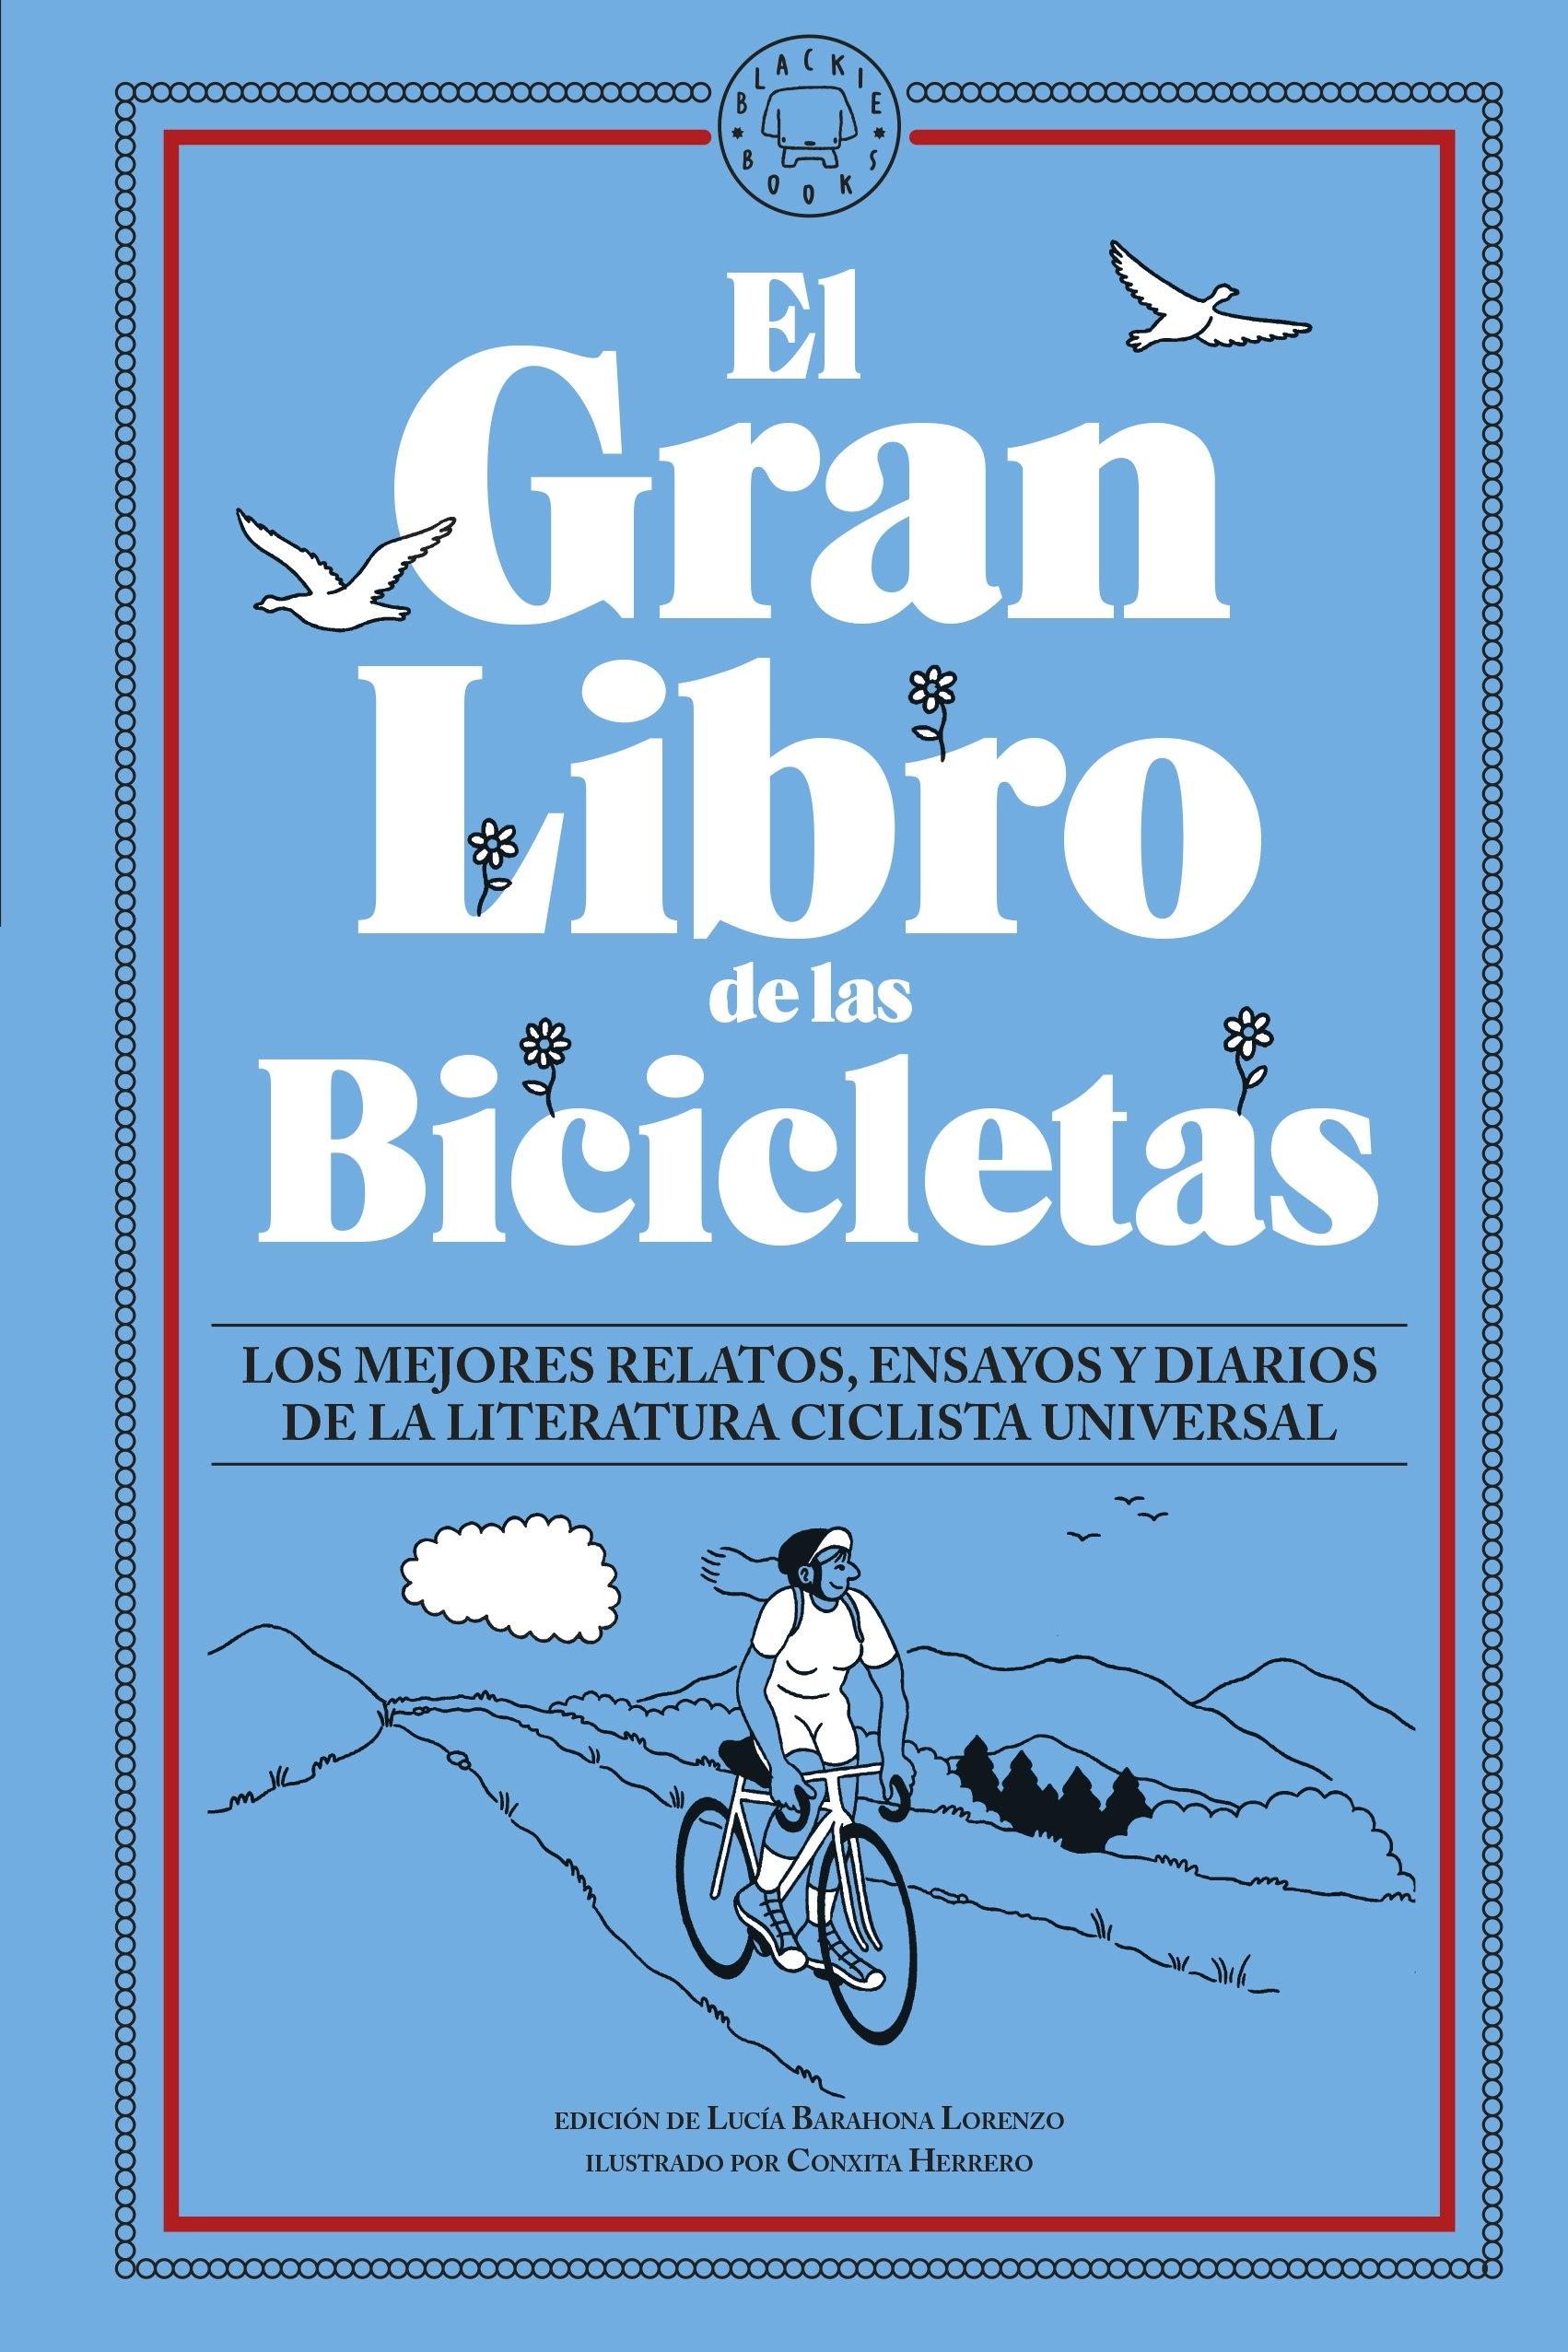 Gran libro de las bicicletas, El "Los mejores relatos, ensayos y diarios de la literatura ciclista univers"